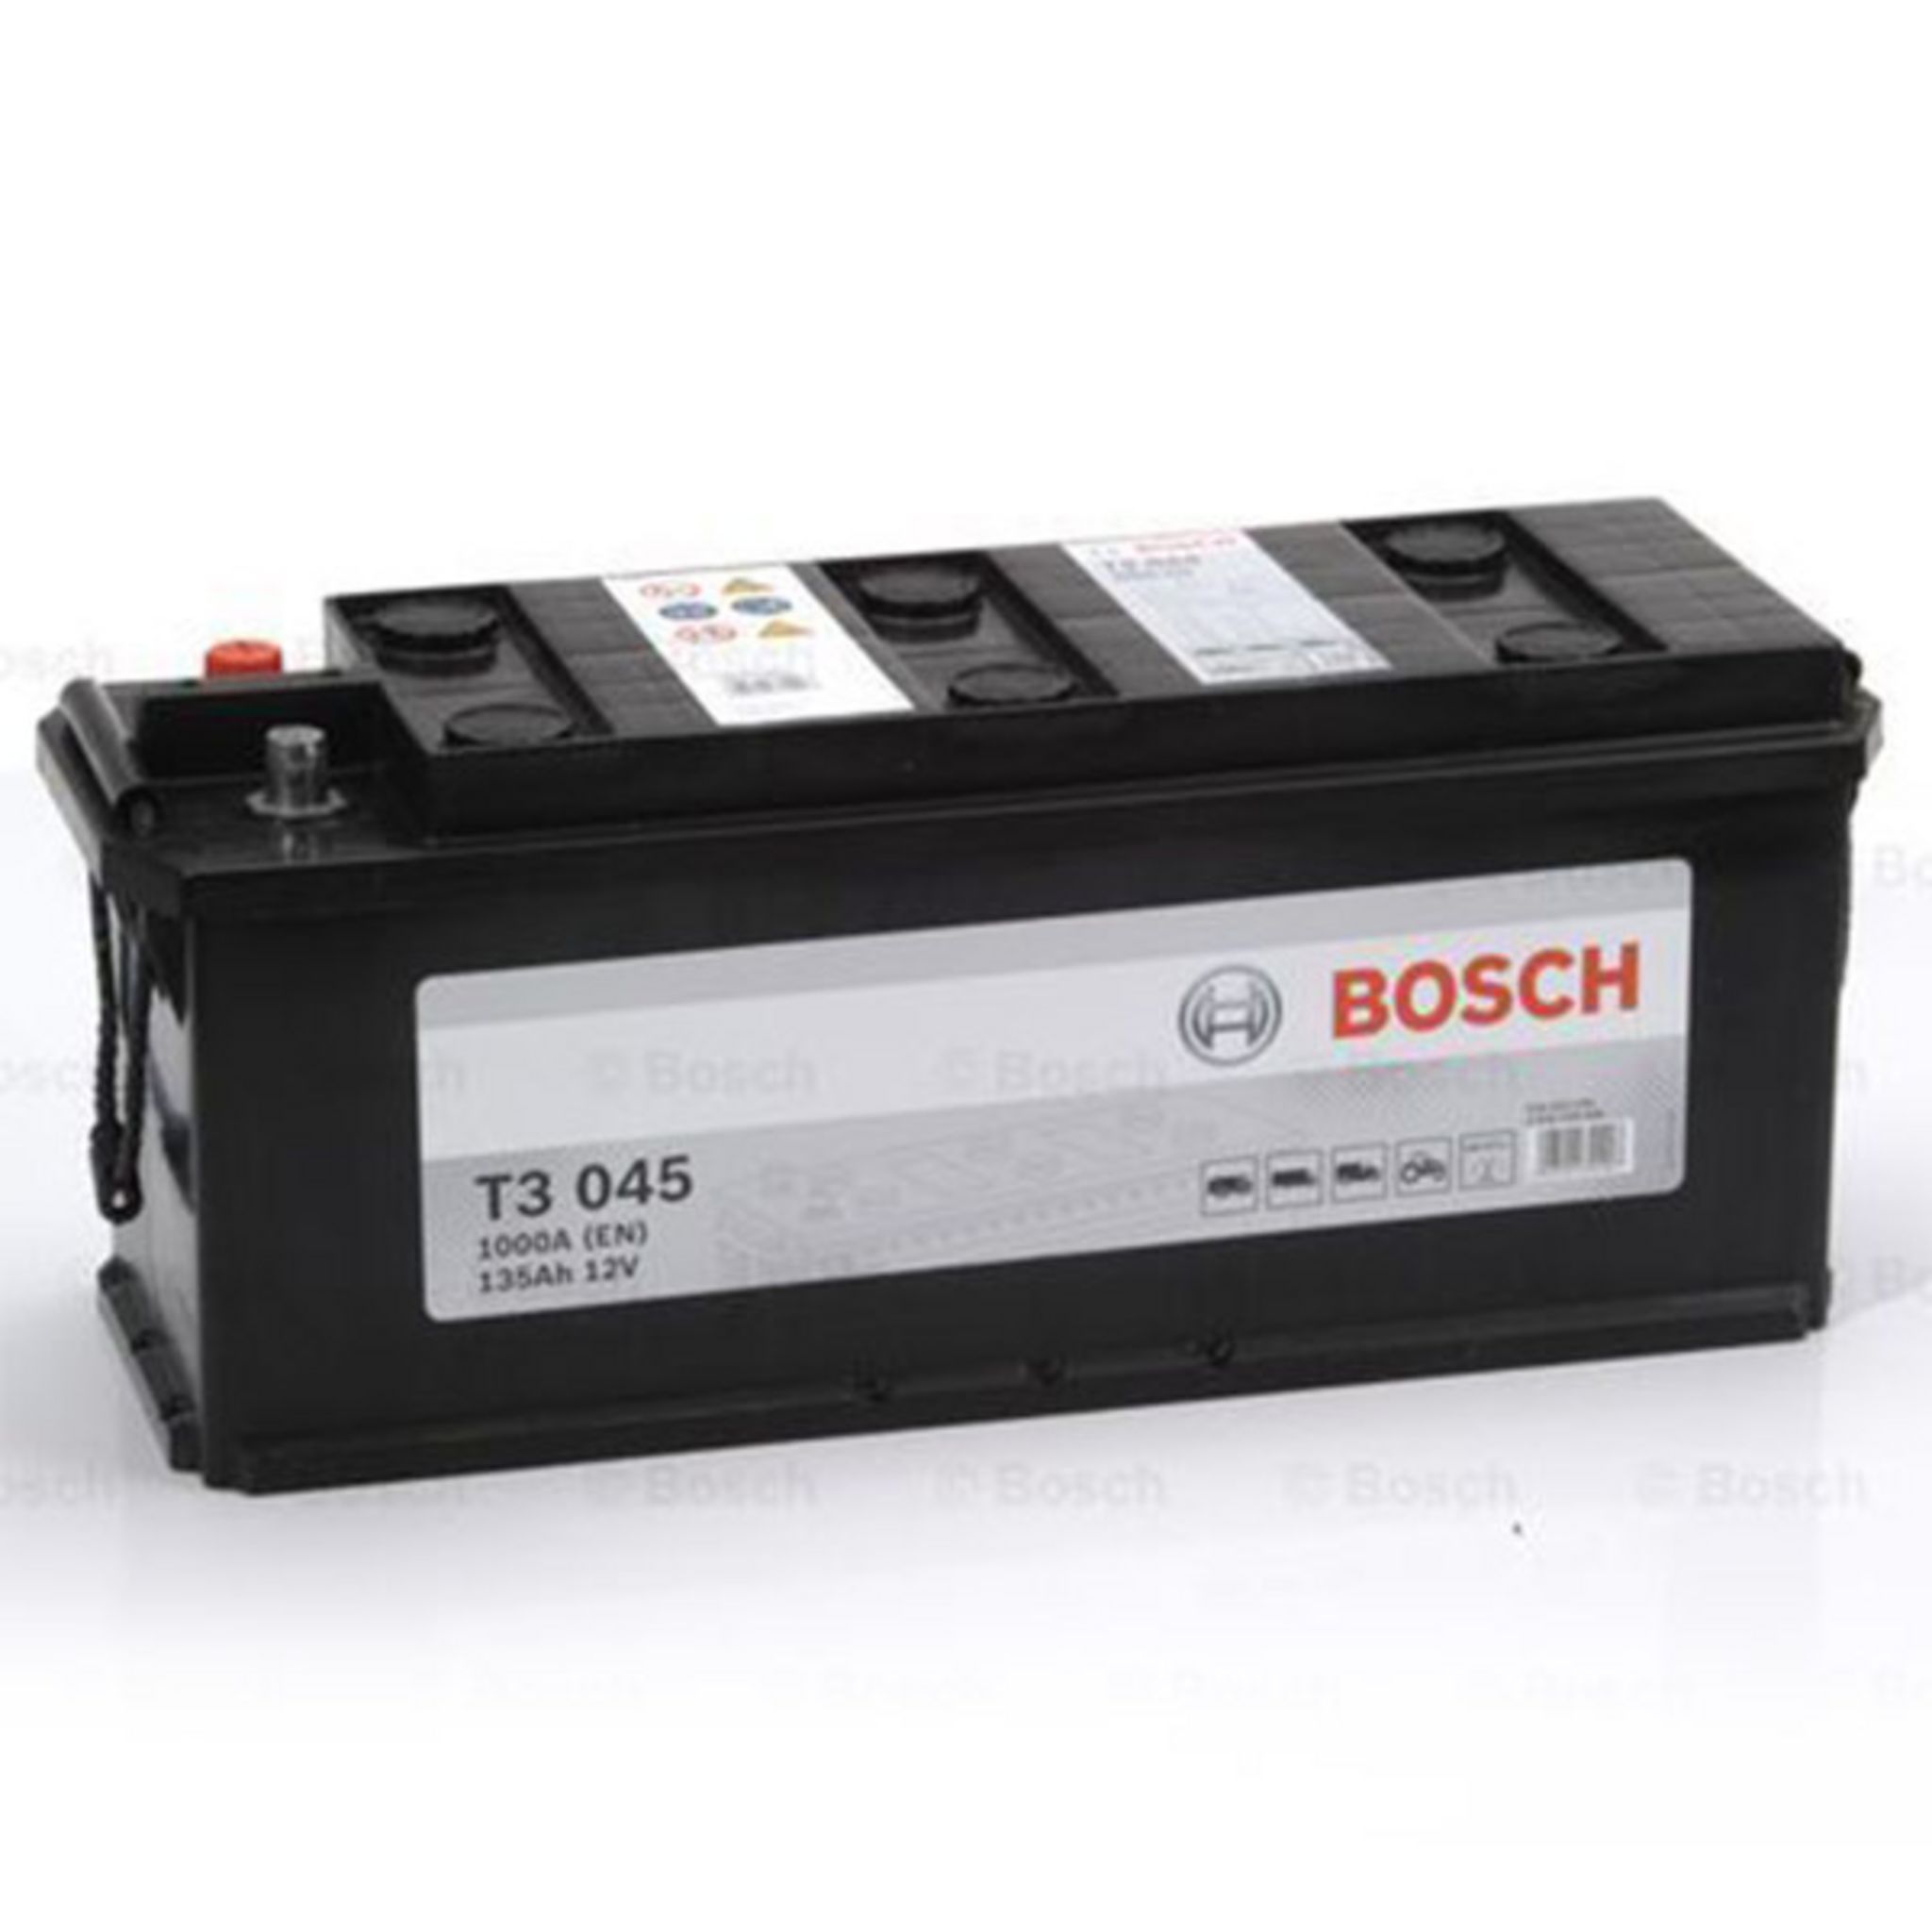 BOSCH Batterie Bosch T3045 135Ah 1000A BOSCH pas cher 